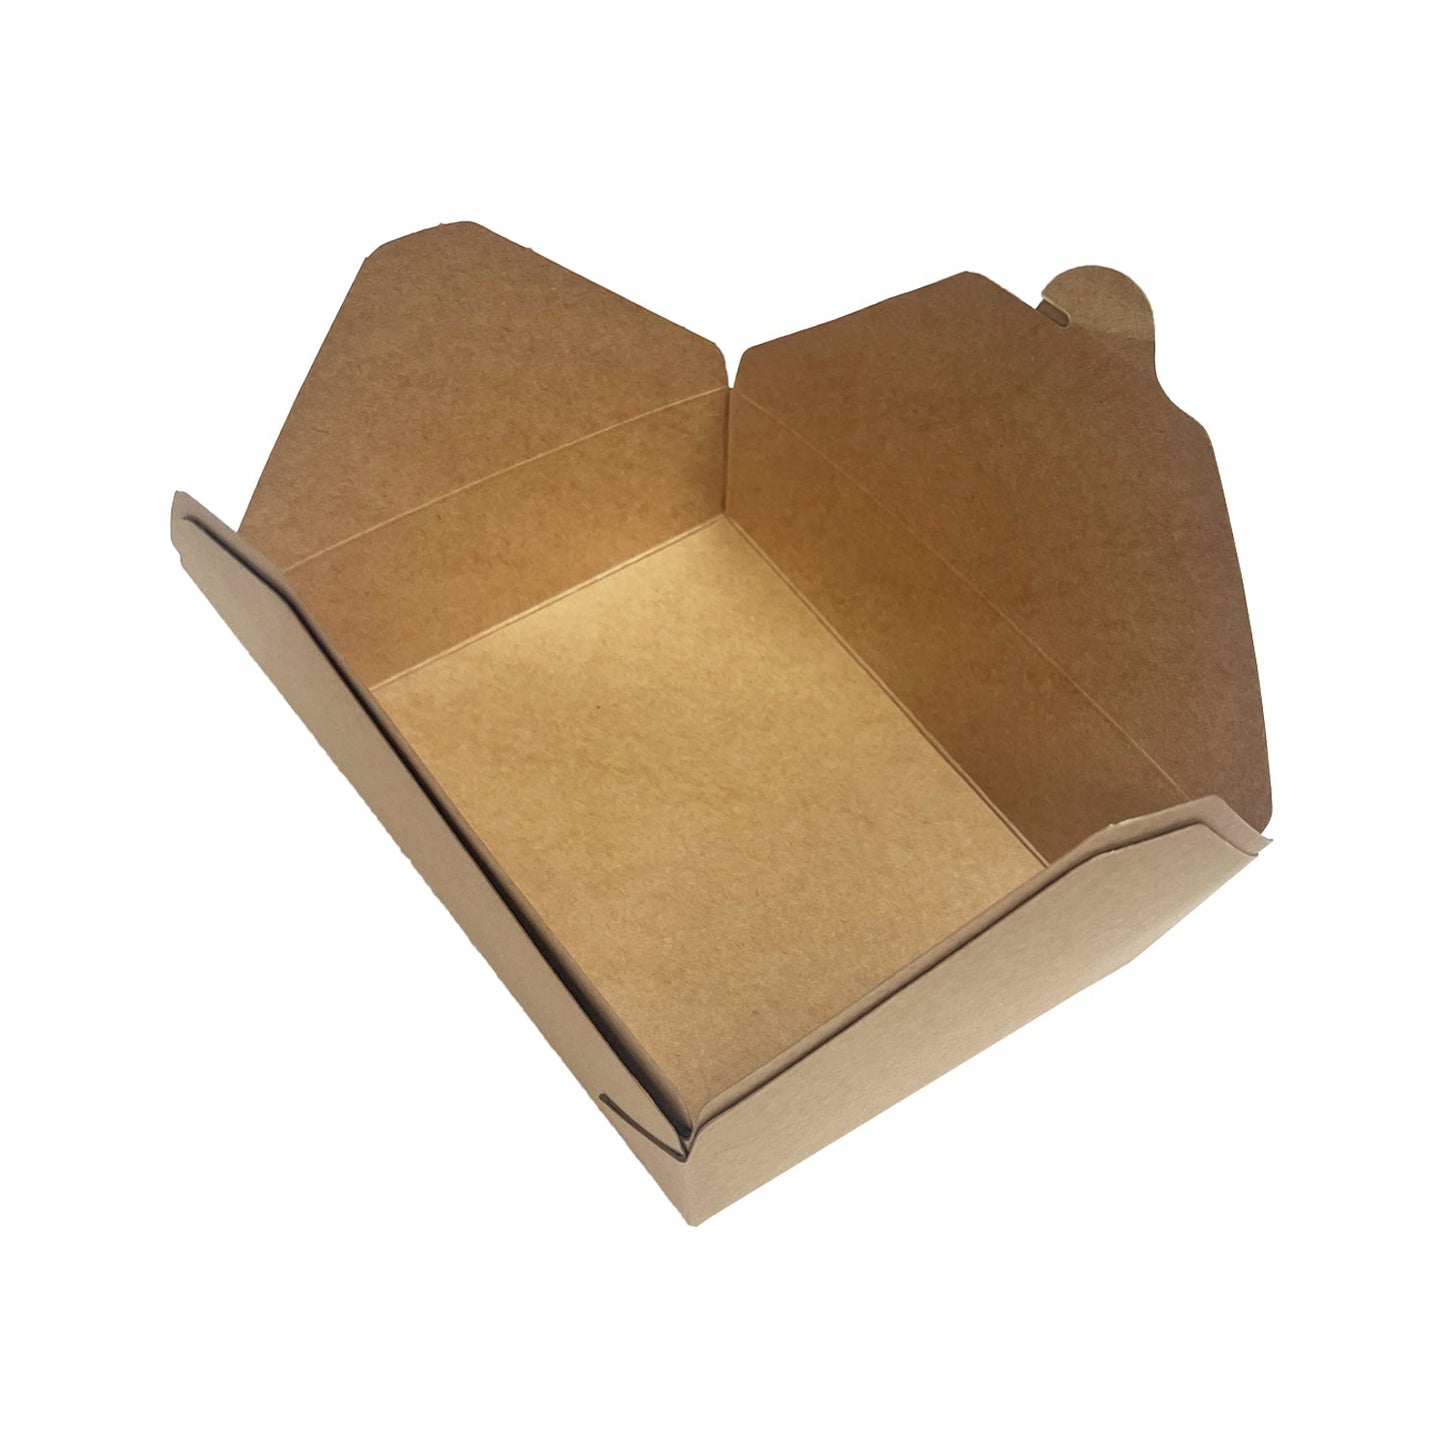 KIS-TO49 | #2, Kraft Paper Takeout Box, 49oz, 1450ml; $0.3/pc